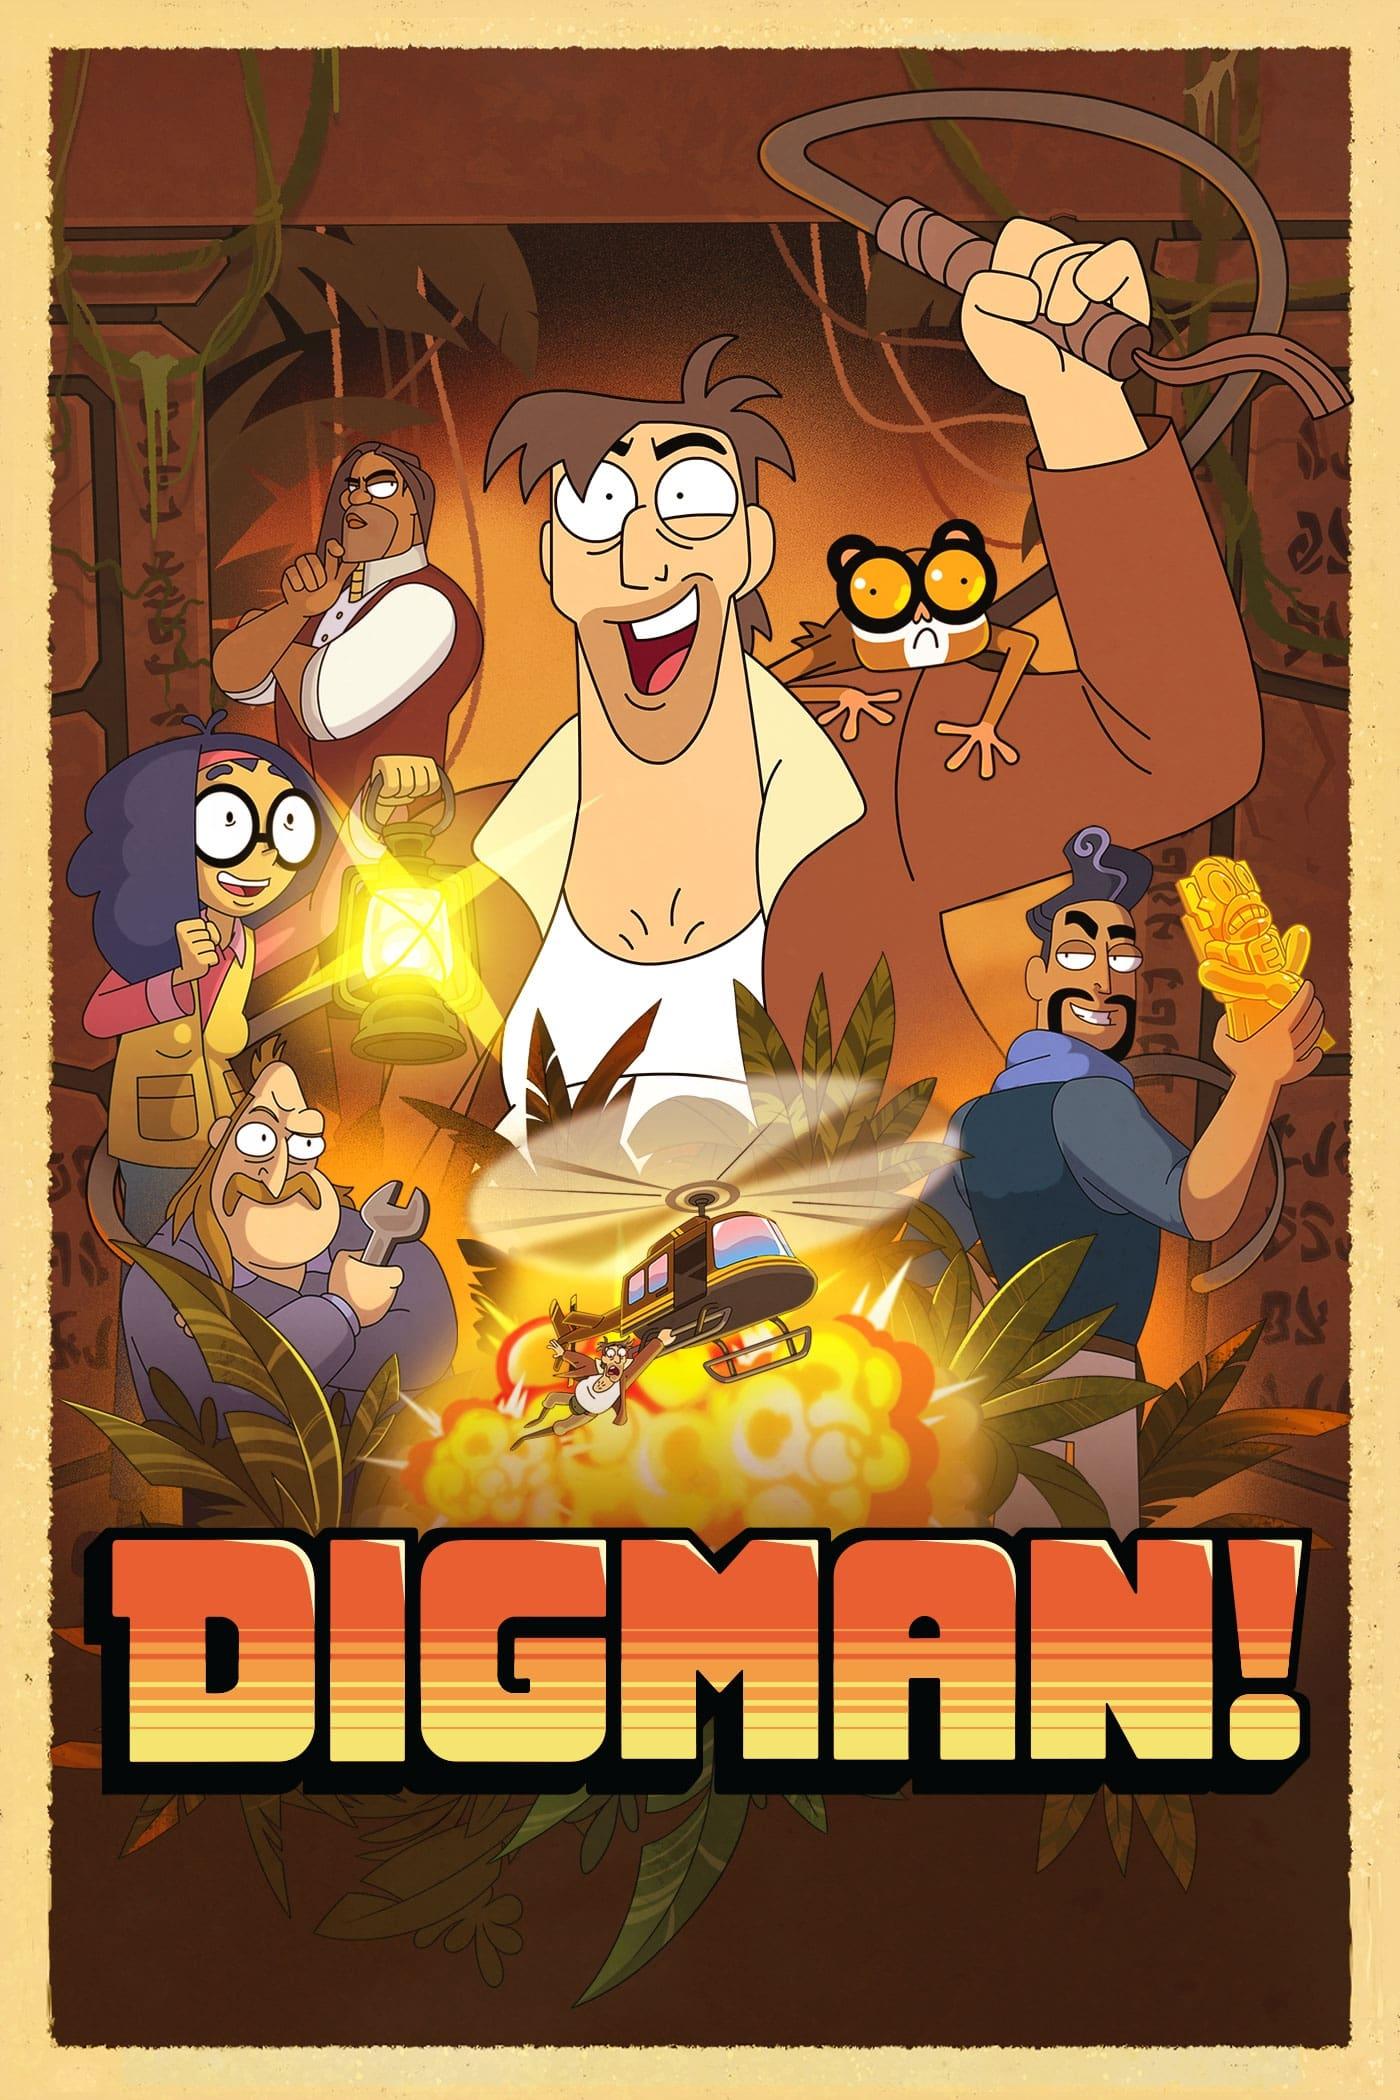 Digman! poster